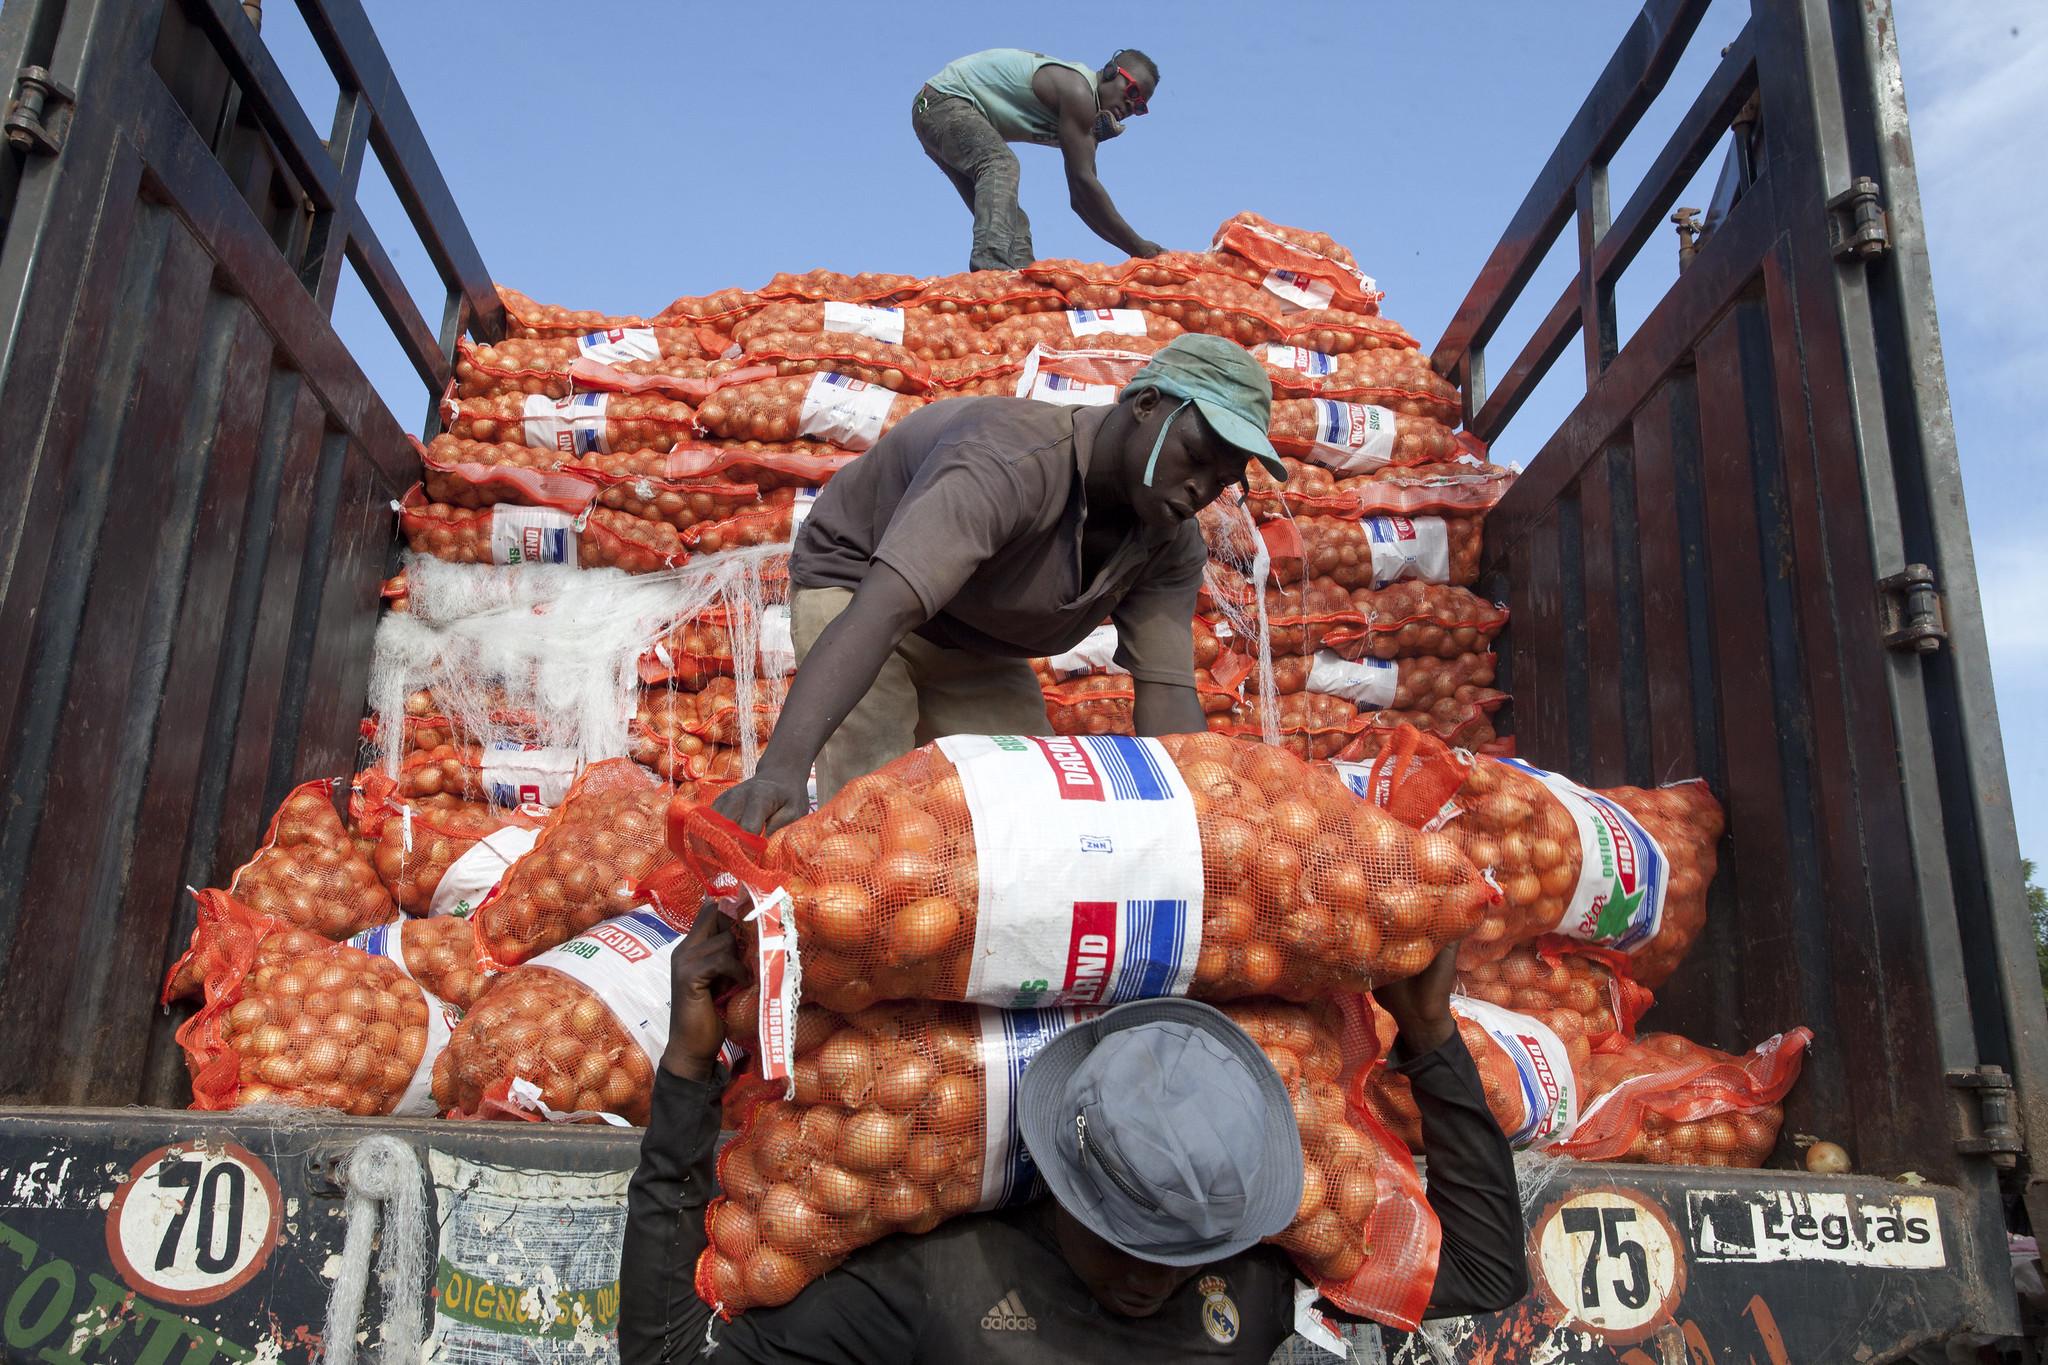 Unload sacks of onions in a farmers market in Bamako